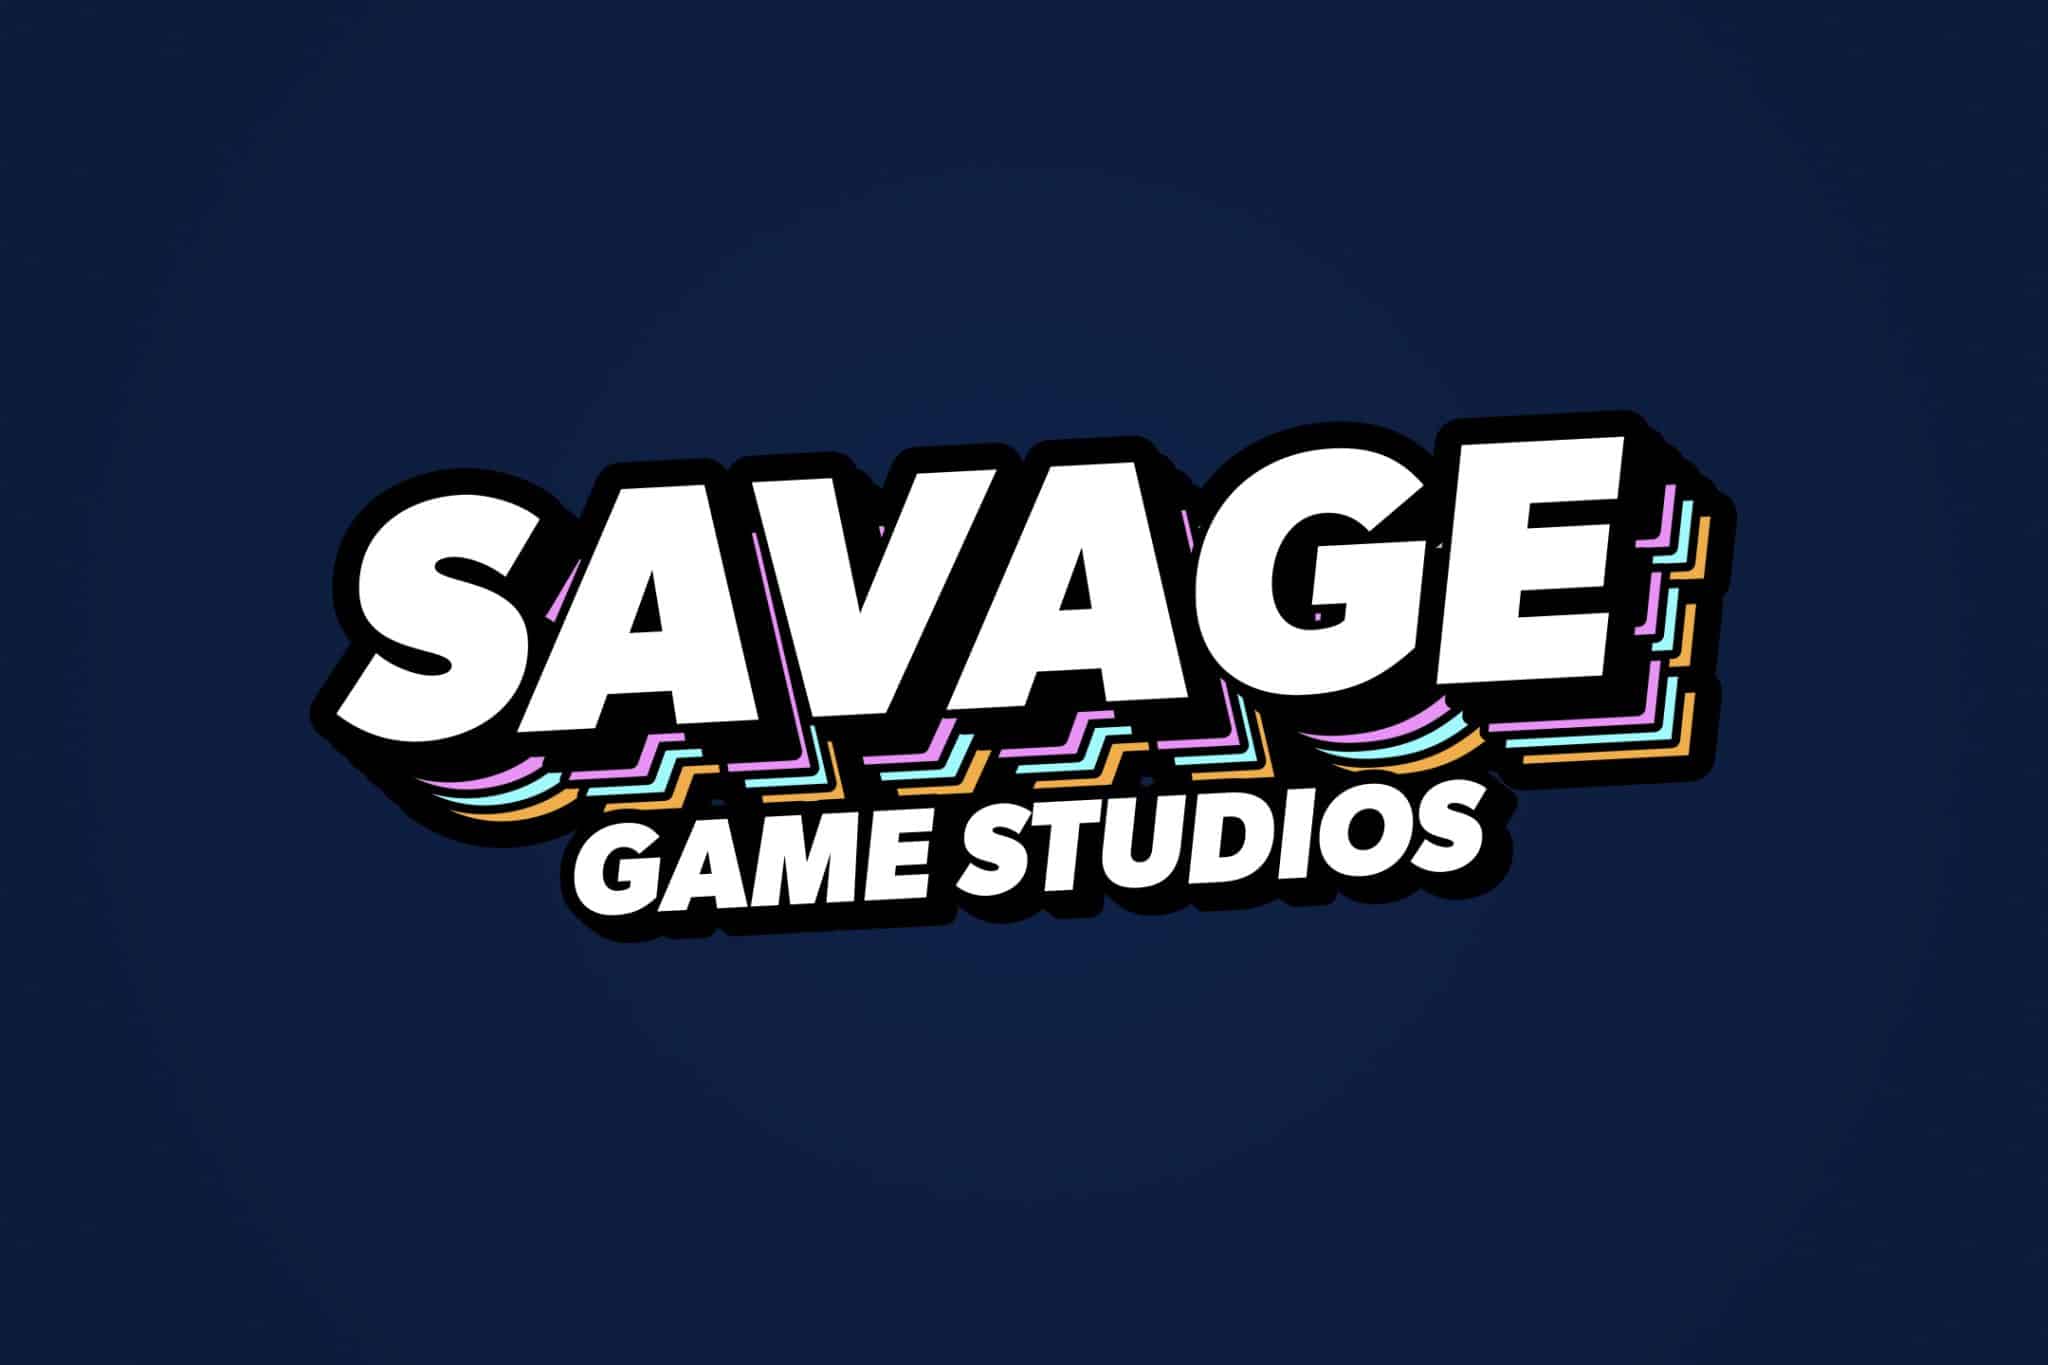 Savage Game Studios logo